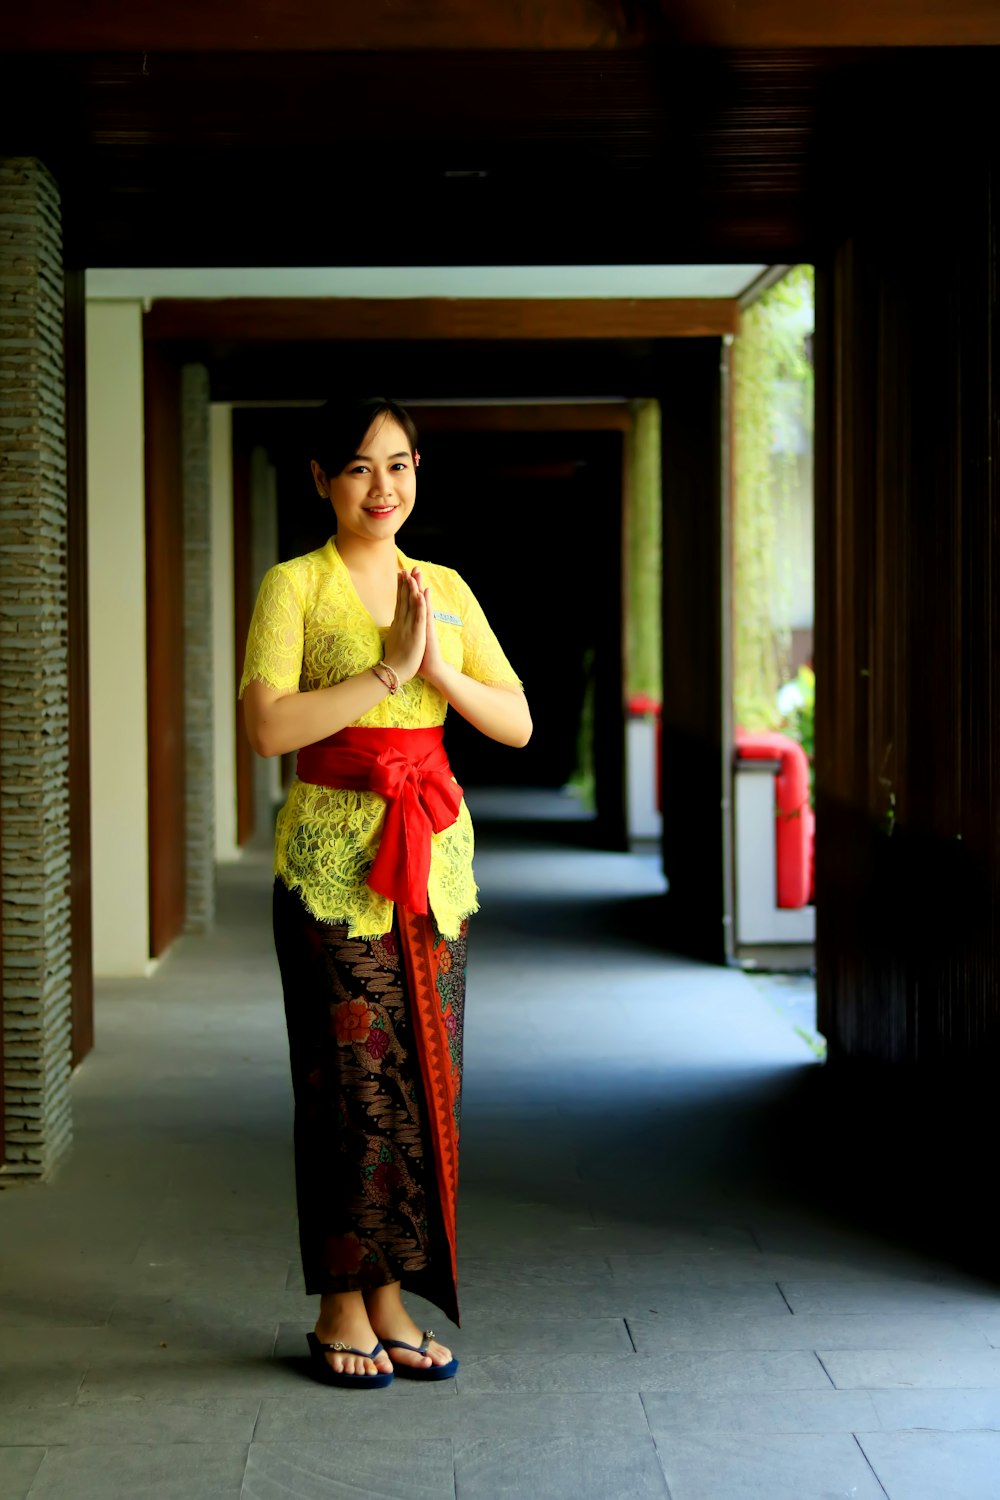 Frau im gelb-roten Sari-Kleid